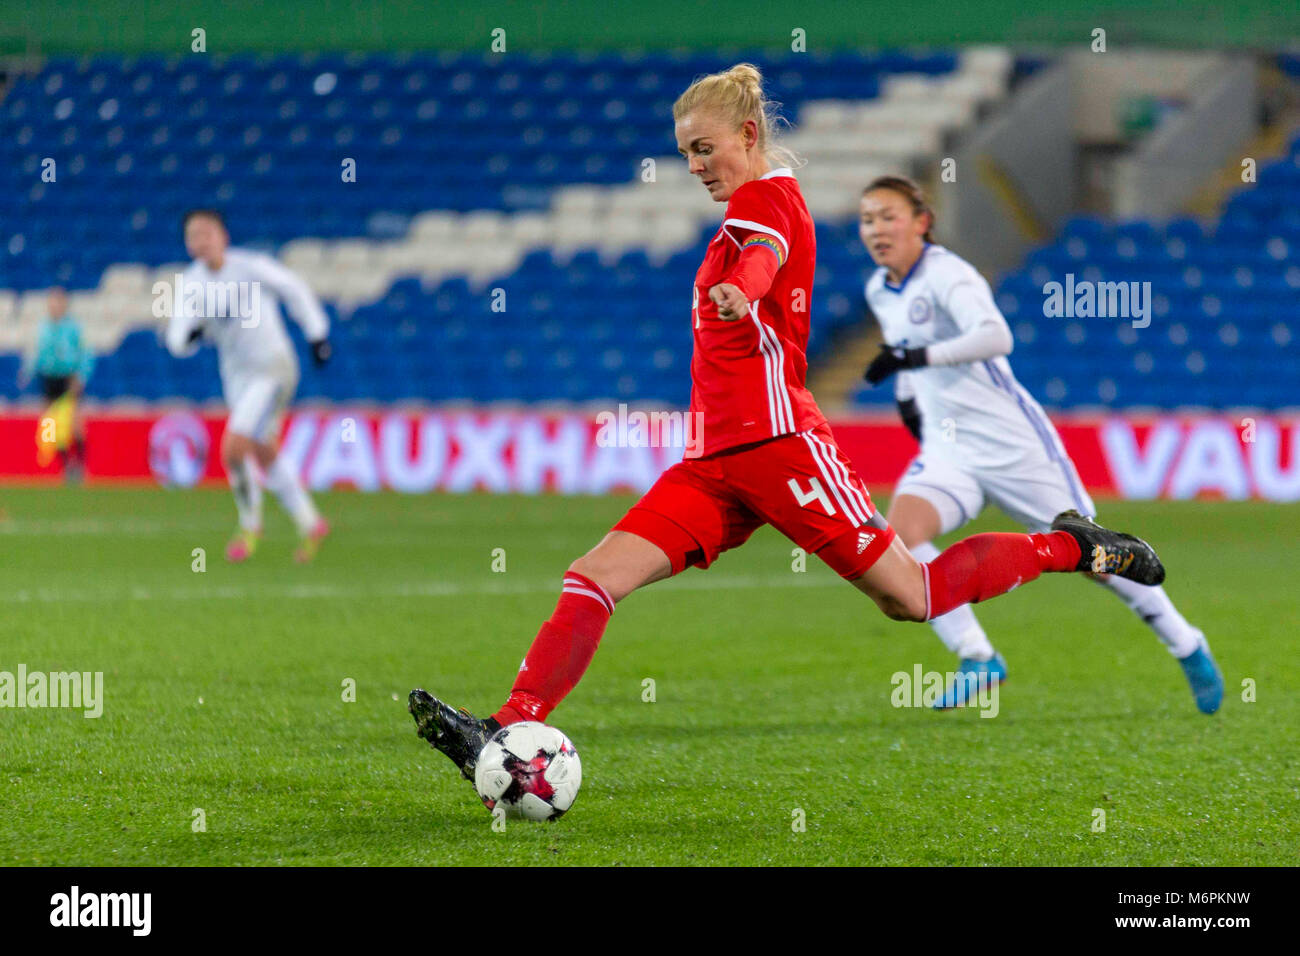 CARDIFF, Royaume-Uni. 24 novembre 2017. Pays de Galles l'équipe nationale de football de la femme capitaine Sophie Ingle coups la balle dans un match contre le Kazakhstan. Banque D'Images